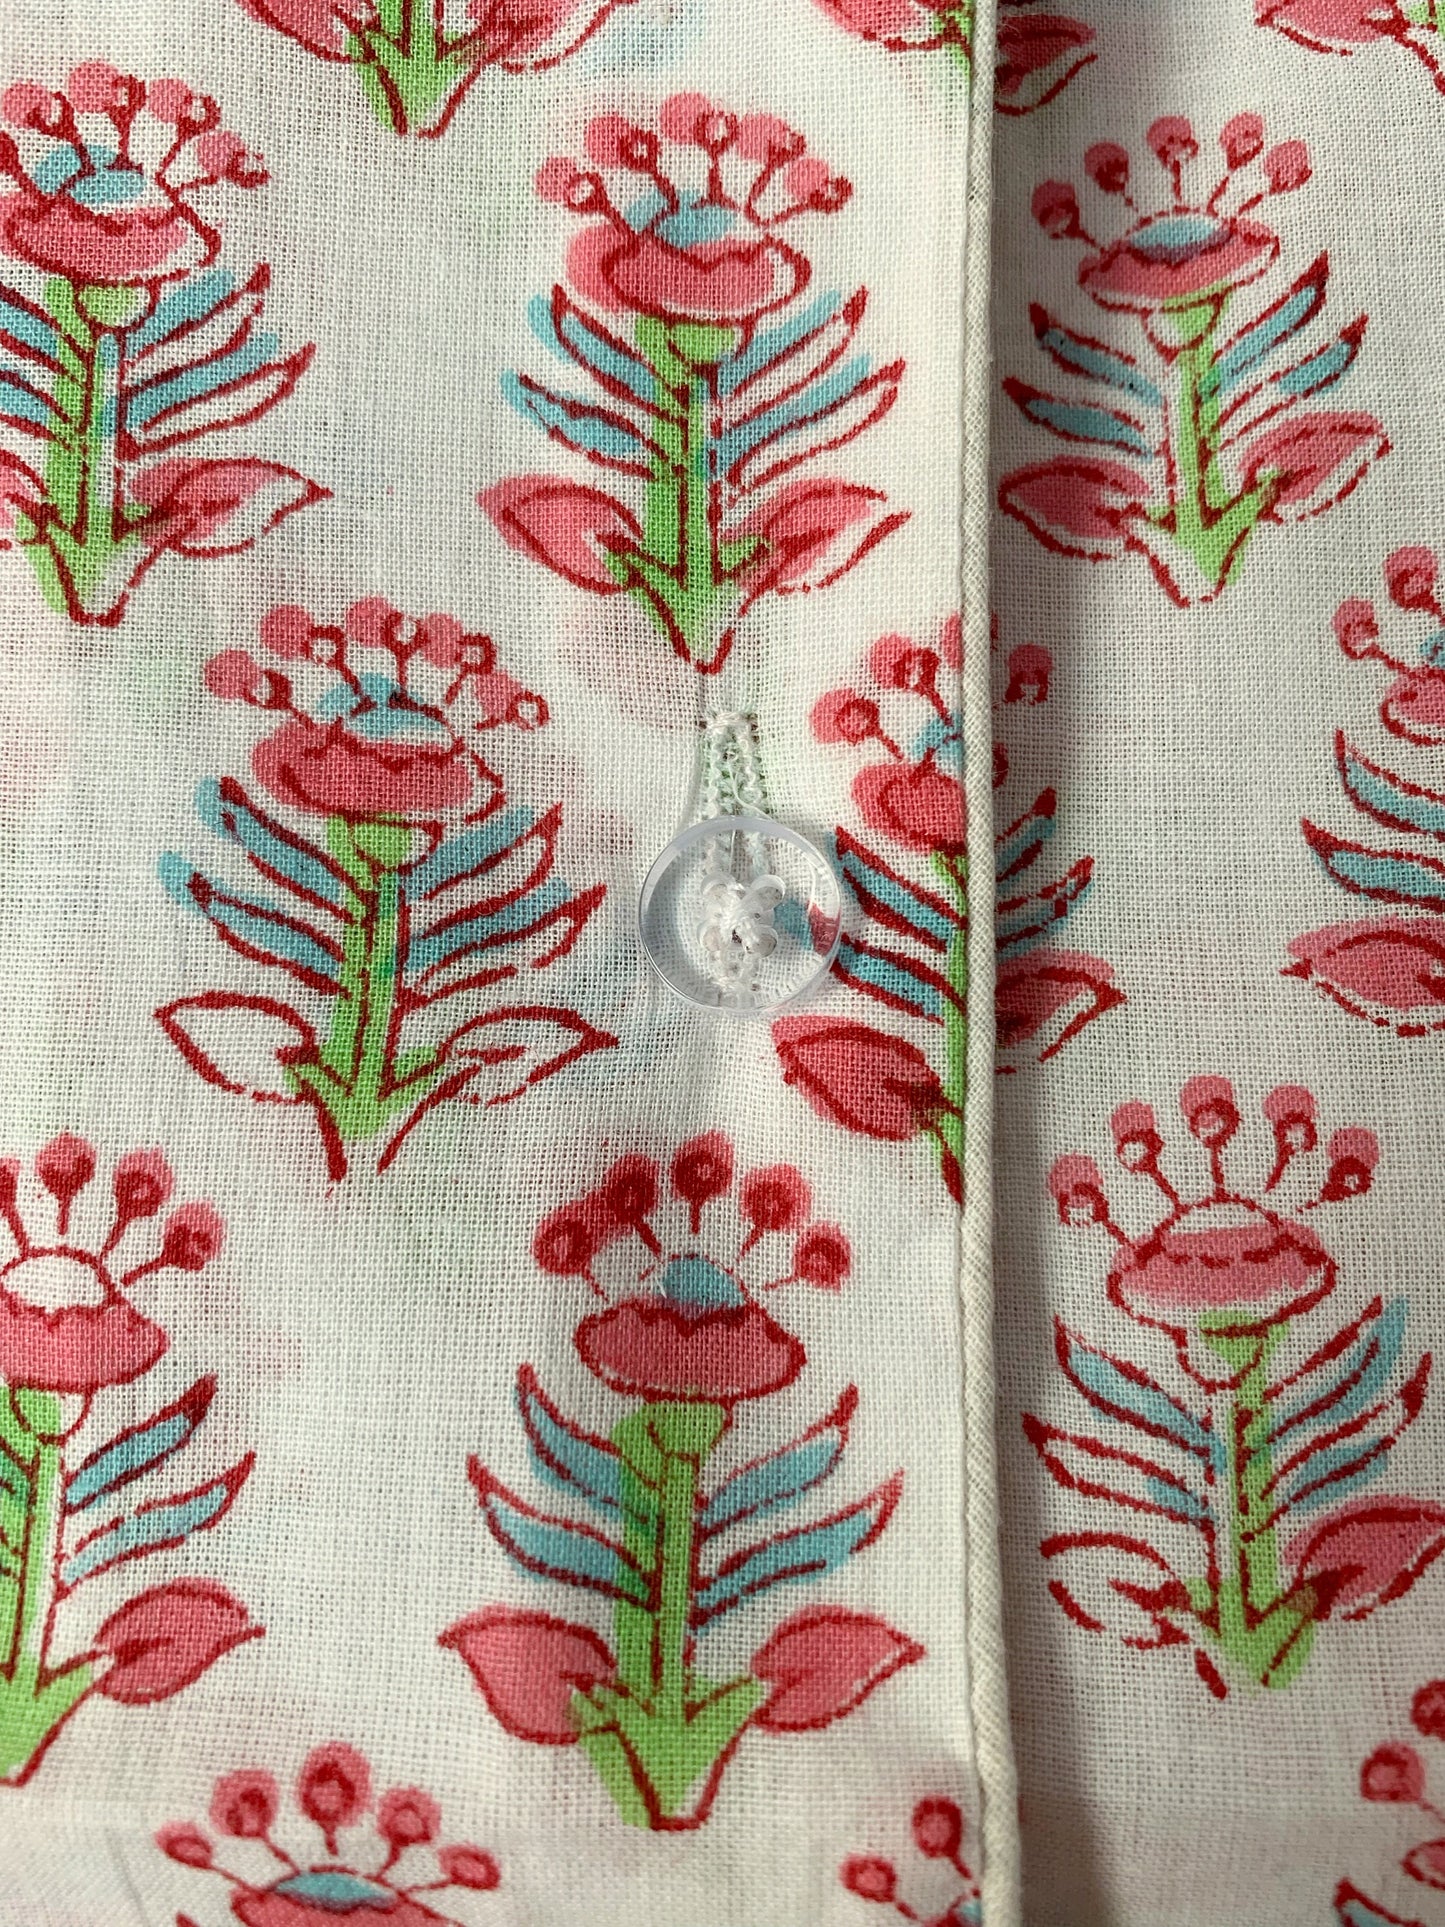 Pijama manga y pantalón corto · Algodón puro estampado block print artesanal en India · Pijama verano algodón 100% · Blanco flores rosa